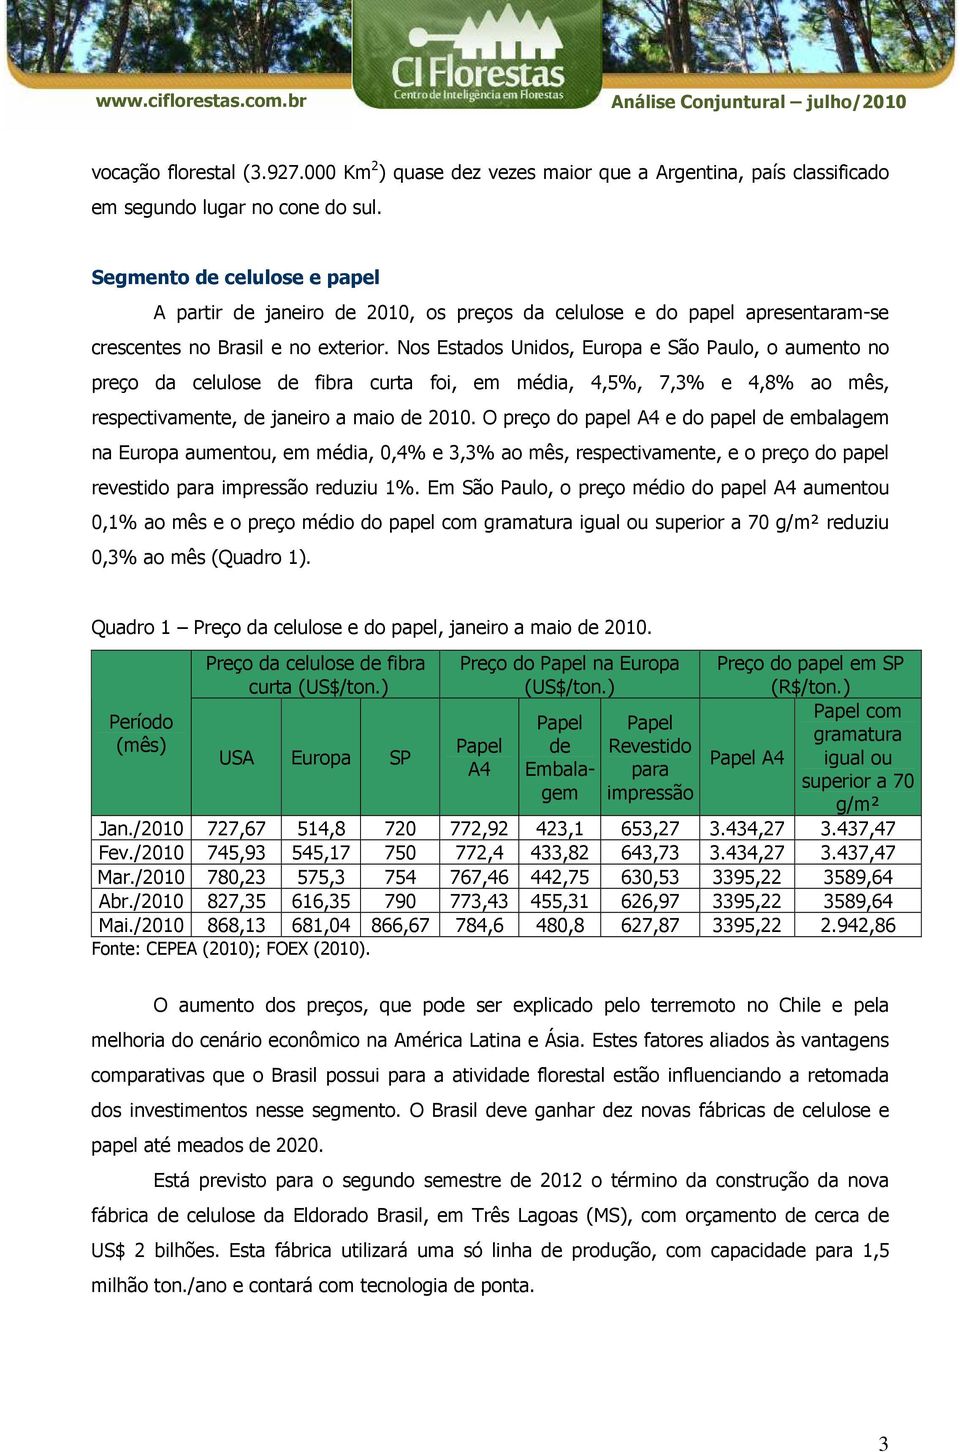 Nos Estados Unidos, Europa e São Paulo, o aumento no preço da celulose de fibra curta foi, em média, 4,5%, 7,3% e 4,8% ao mês, respectivamente, de janeiro a maio de 2010.